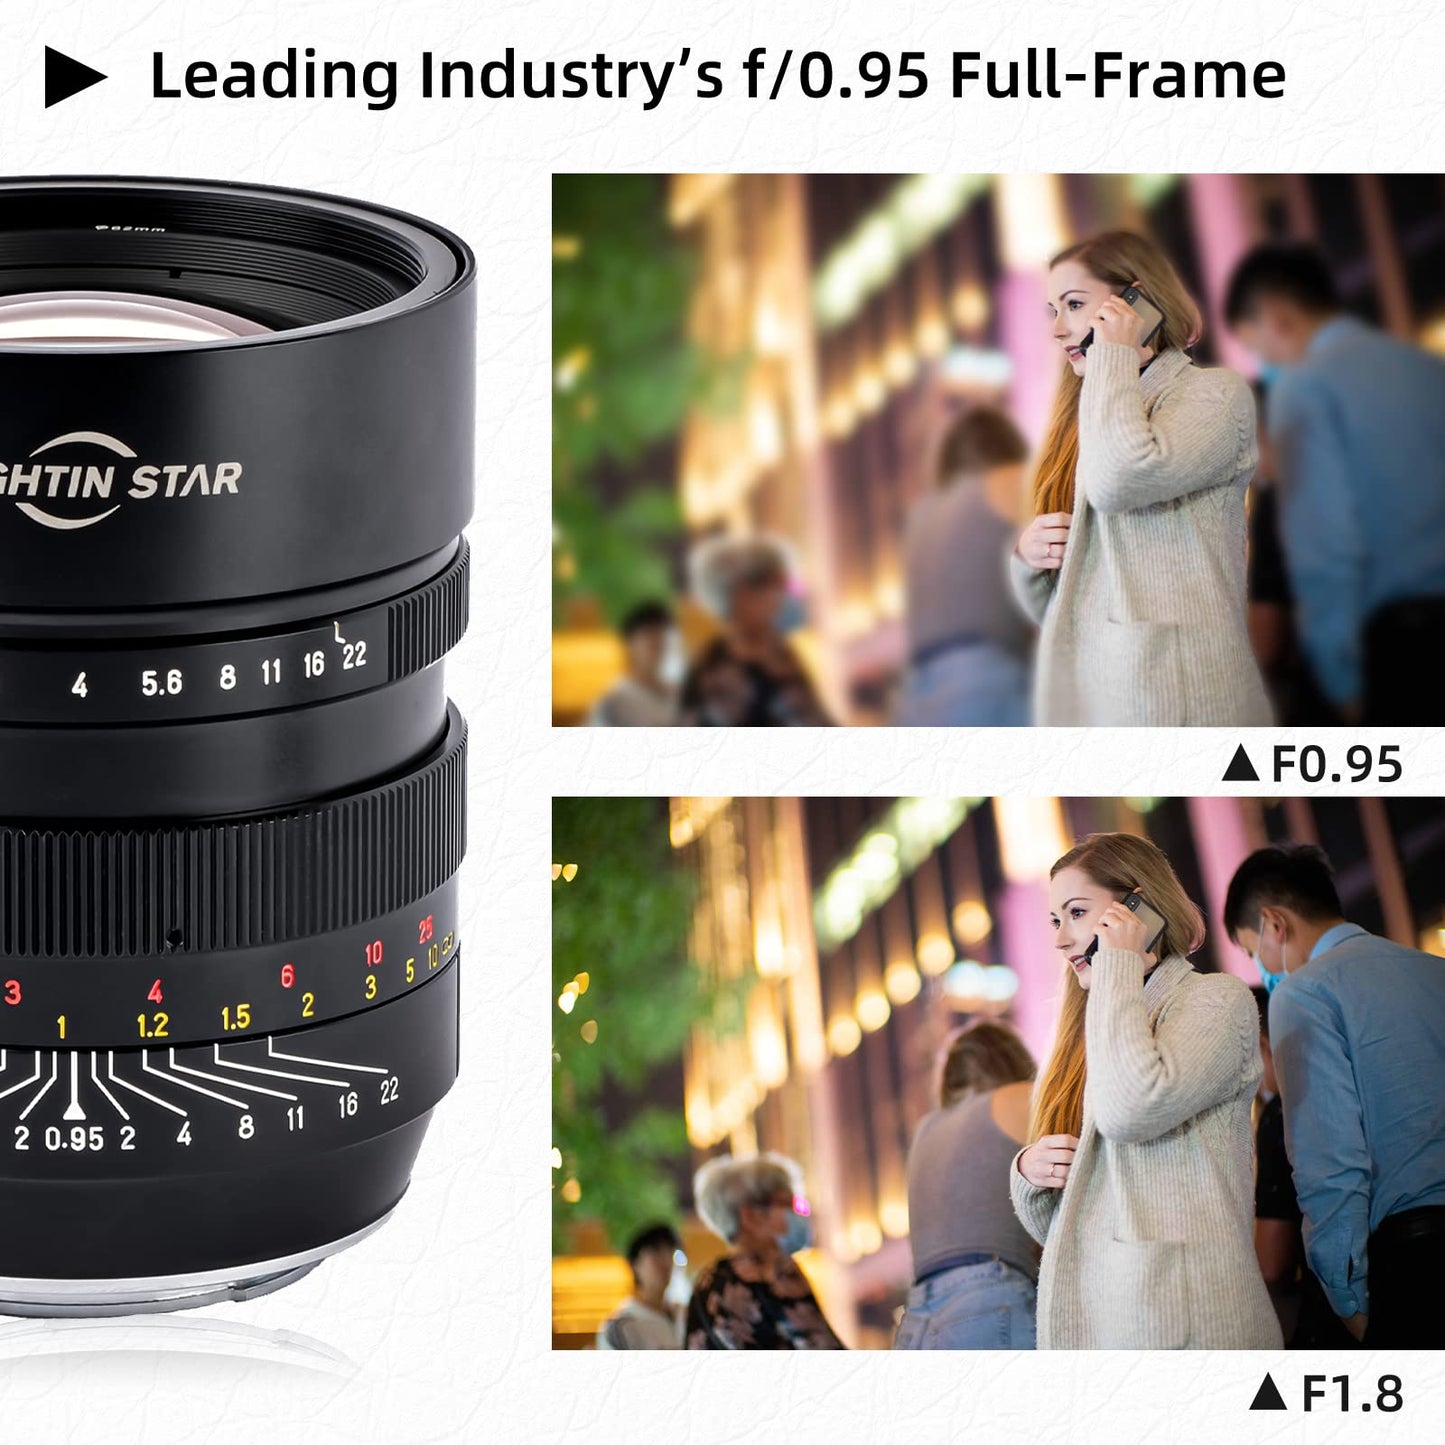 Viltrox 20mm F1.8 Ultra Wide Angle Lens Fisheye Lens Full Frame